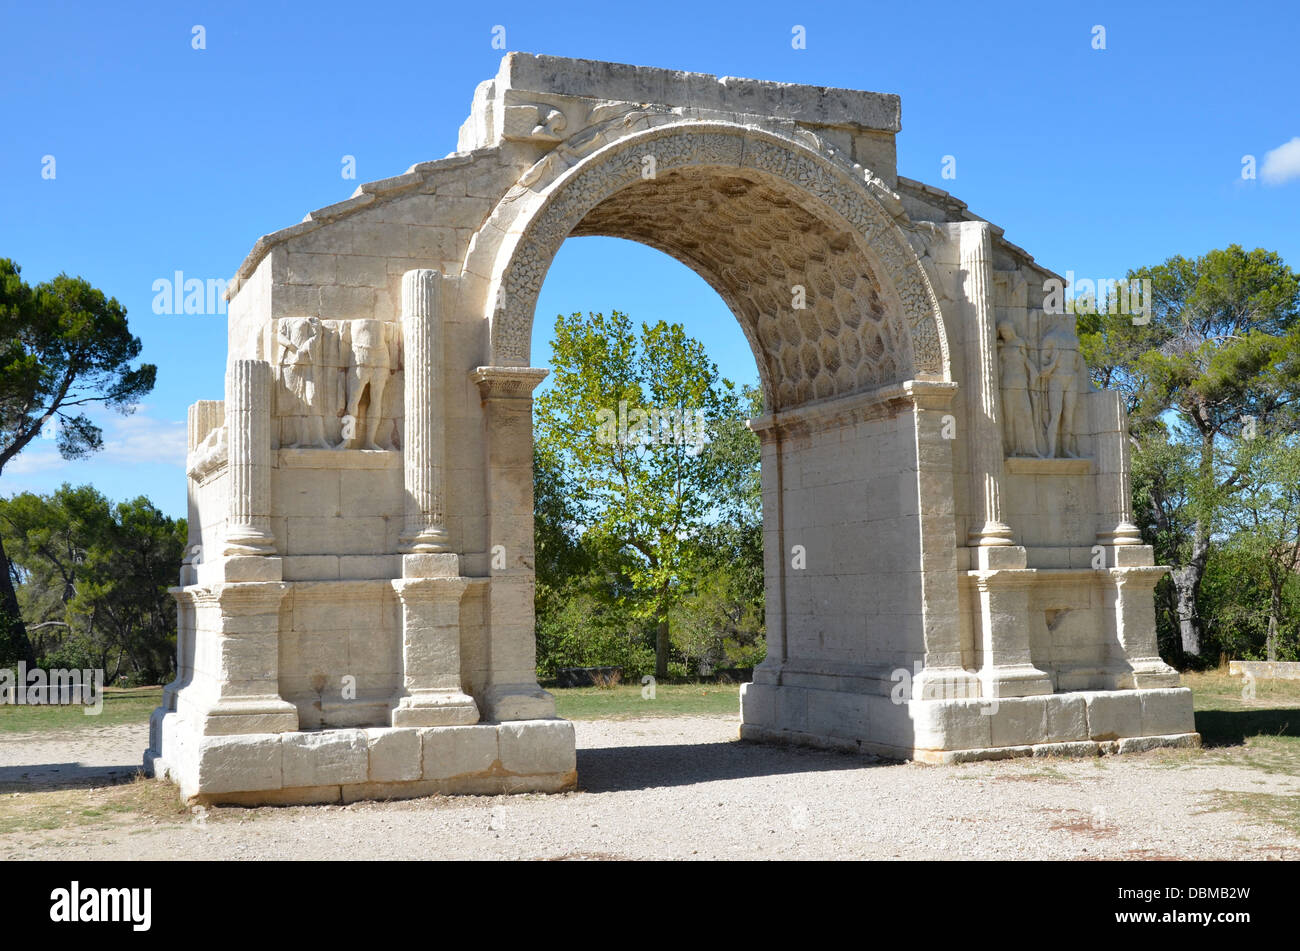 Glanum era un oppidum o città fortificata nel presente giorno Provence, fondata da un popolo Celto-Ligurian chiamato Salyes nel VI secolo A.C. Foto Stock